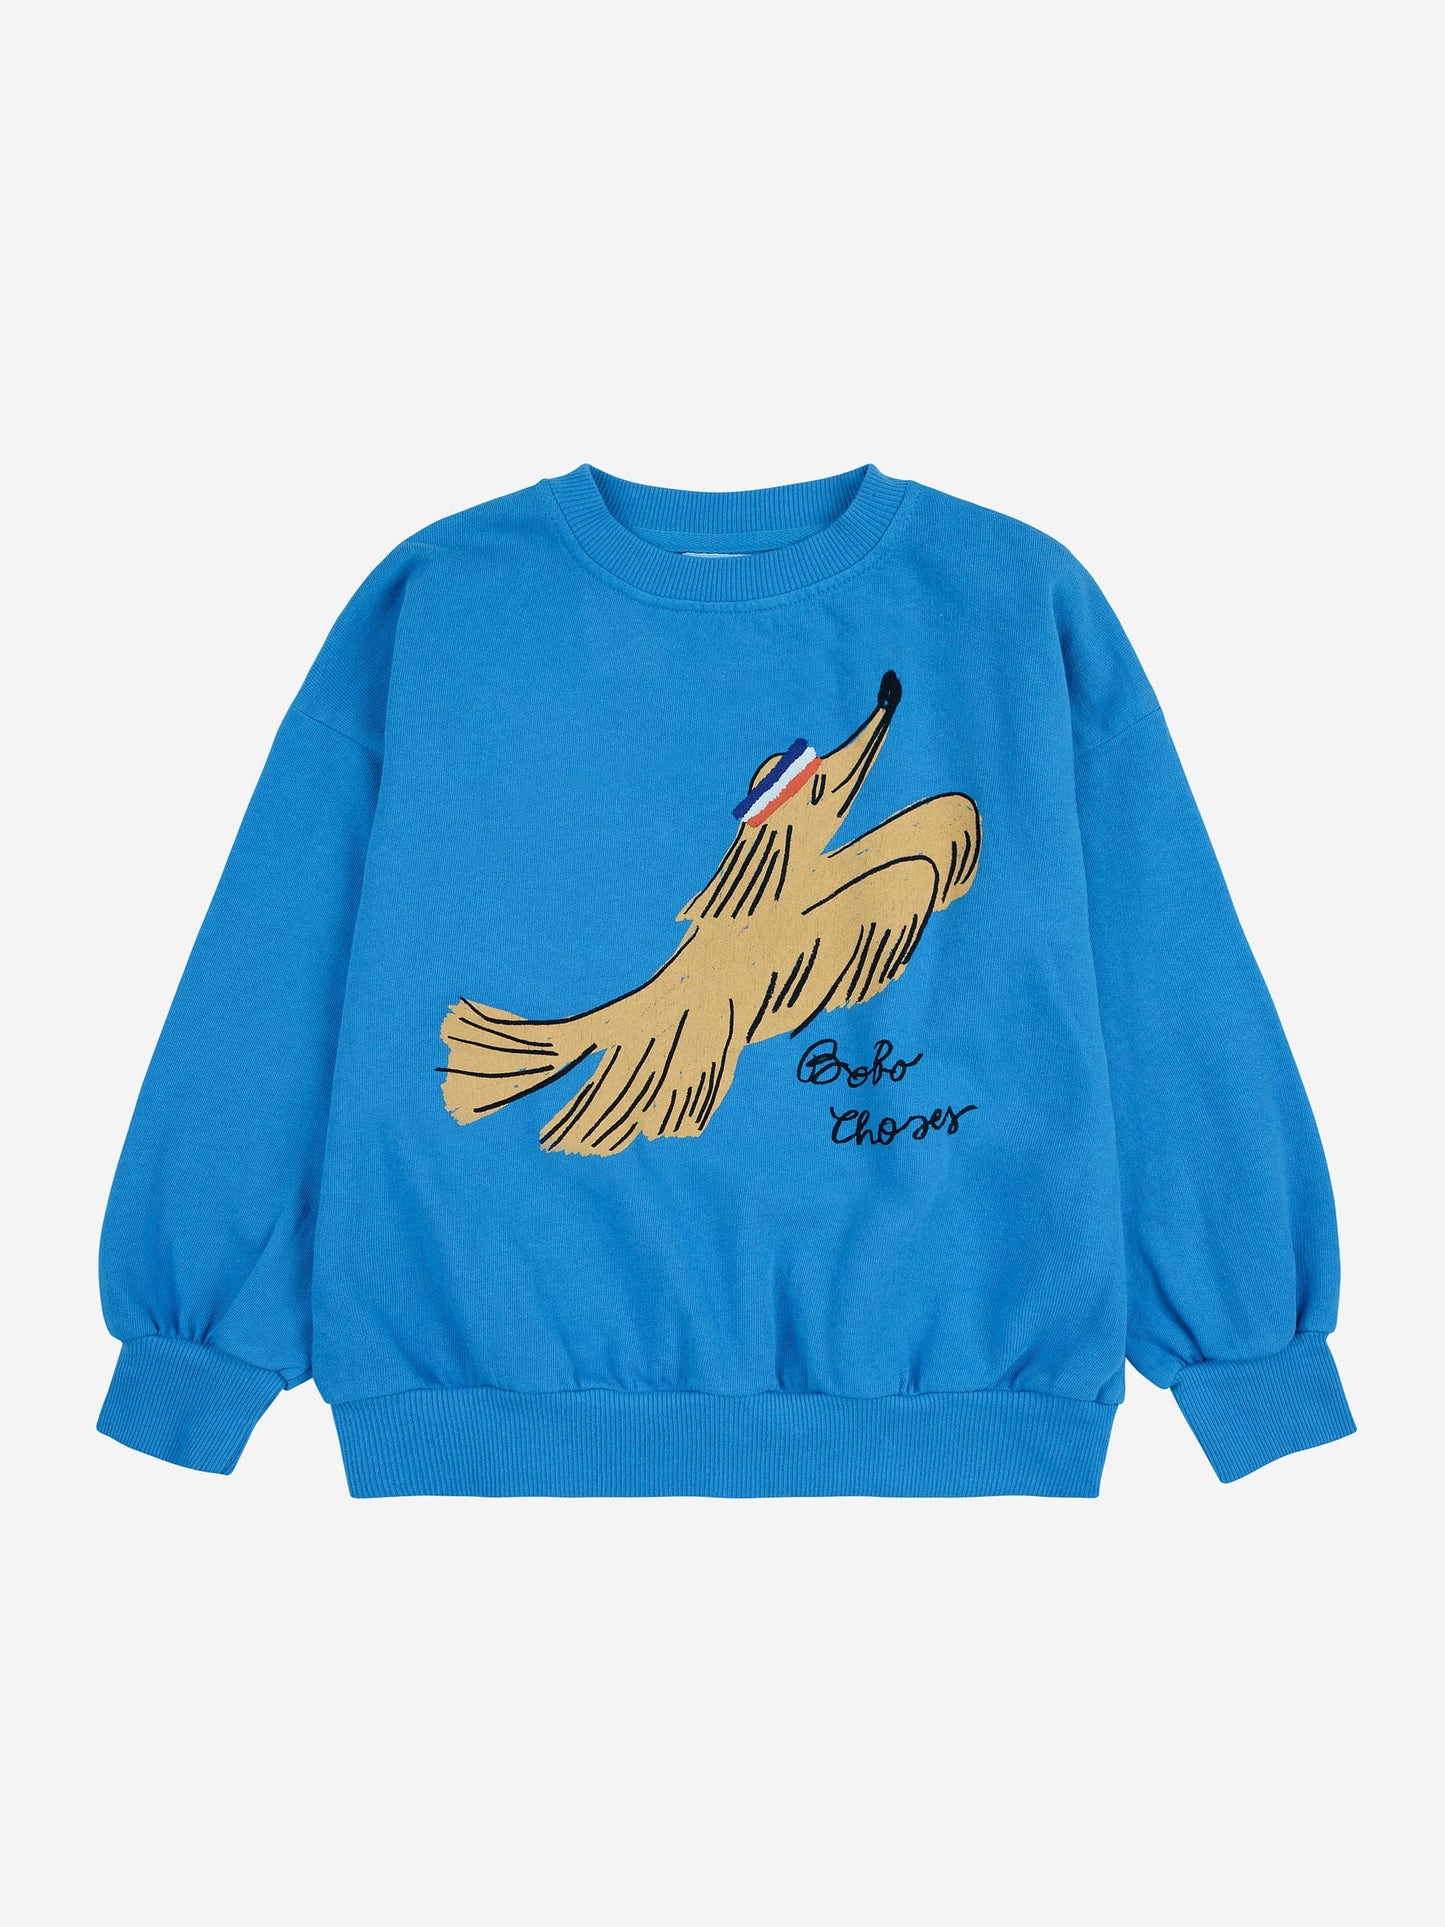 Olypic dog sweatshirt